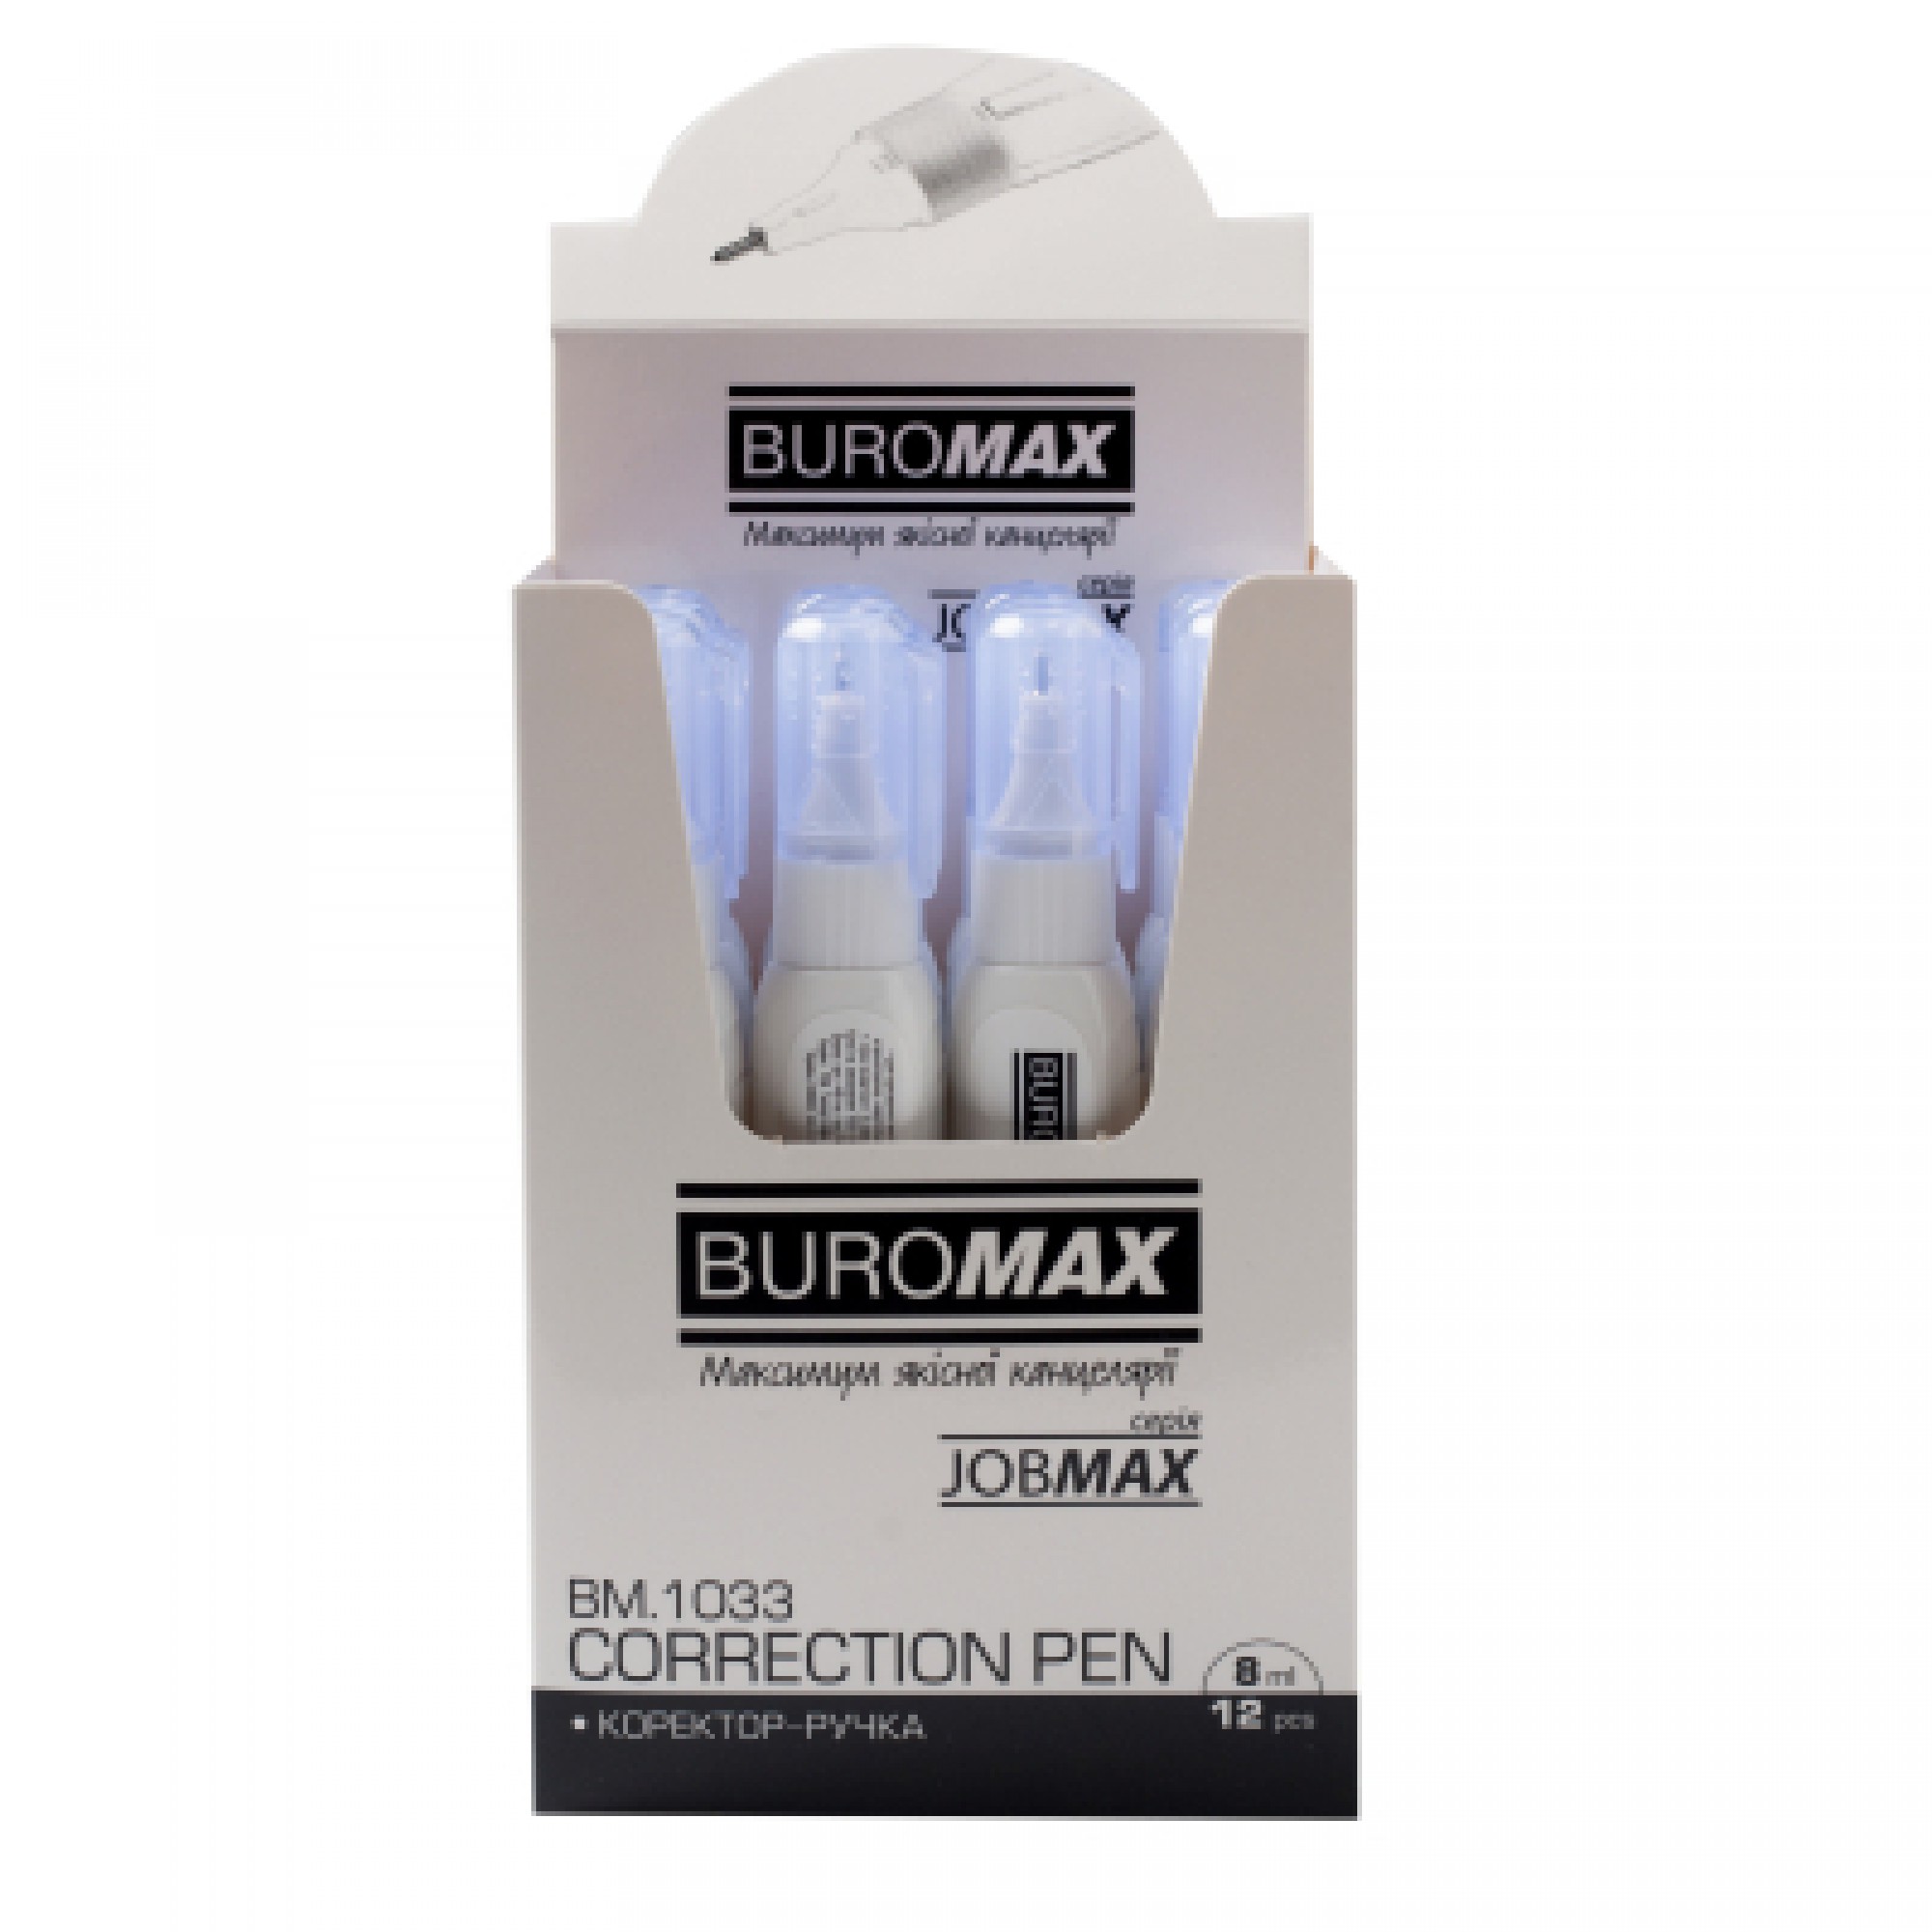 Коректор Buromax ручка 8 мл Jobmax, спиртова основа, металевий наконечник (BM.1033)